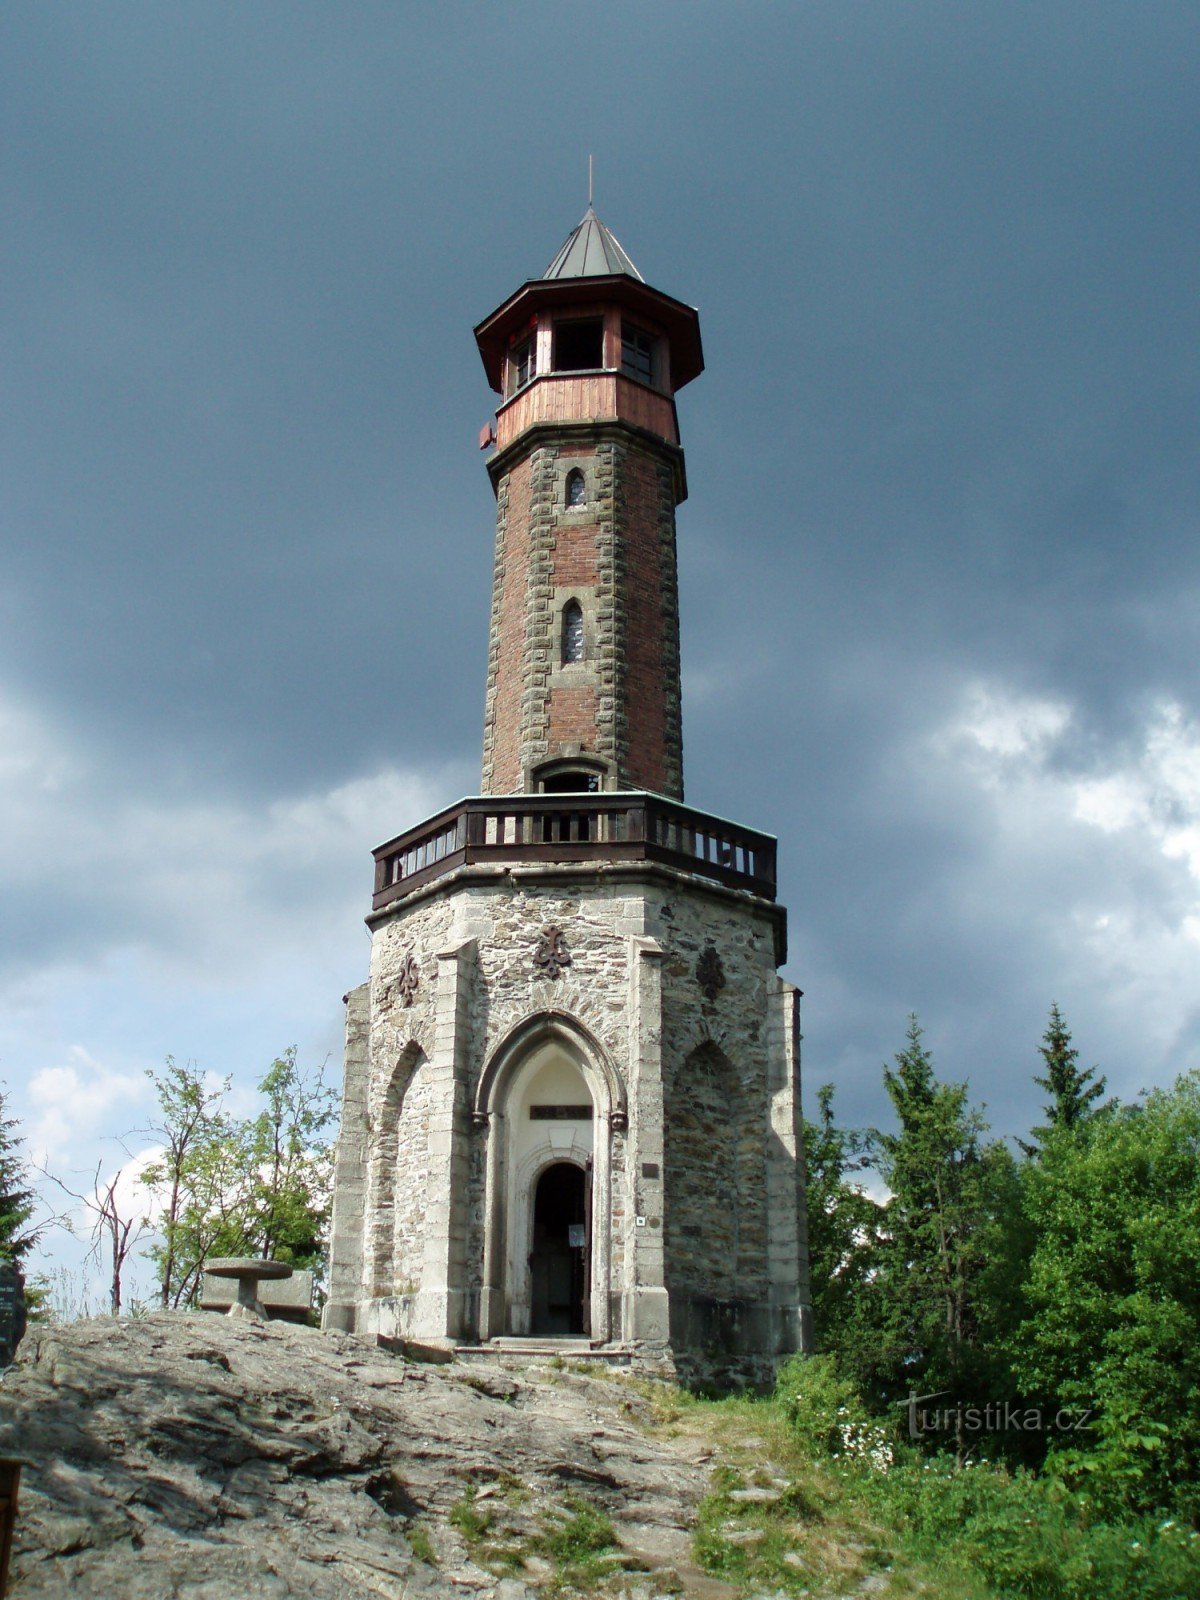 Wieża widokowa Stepanka